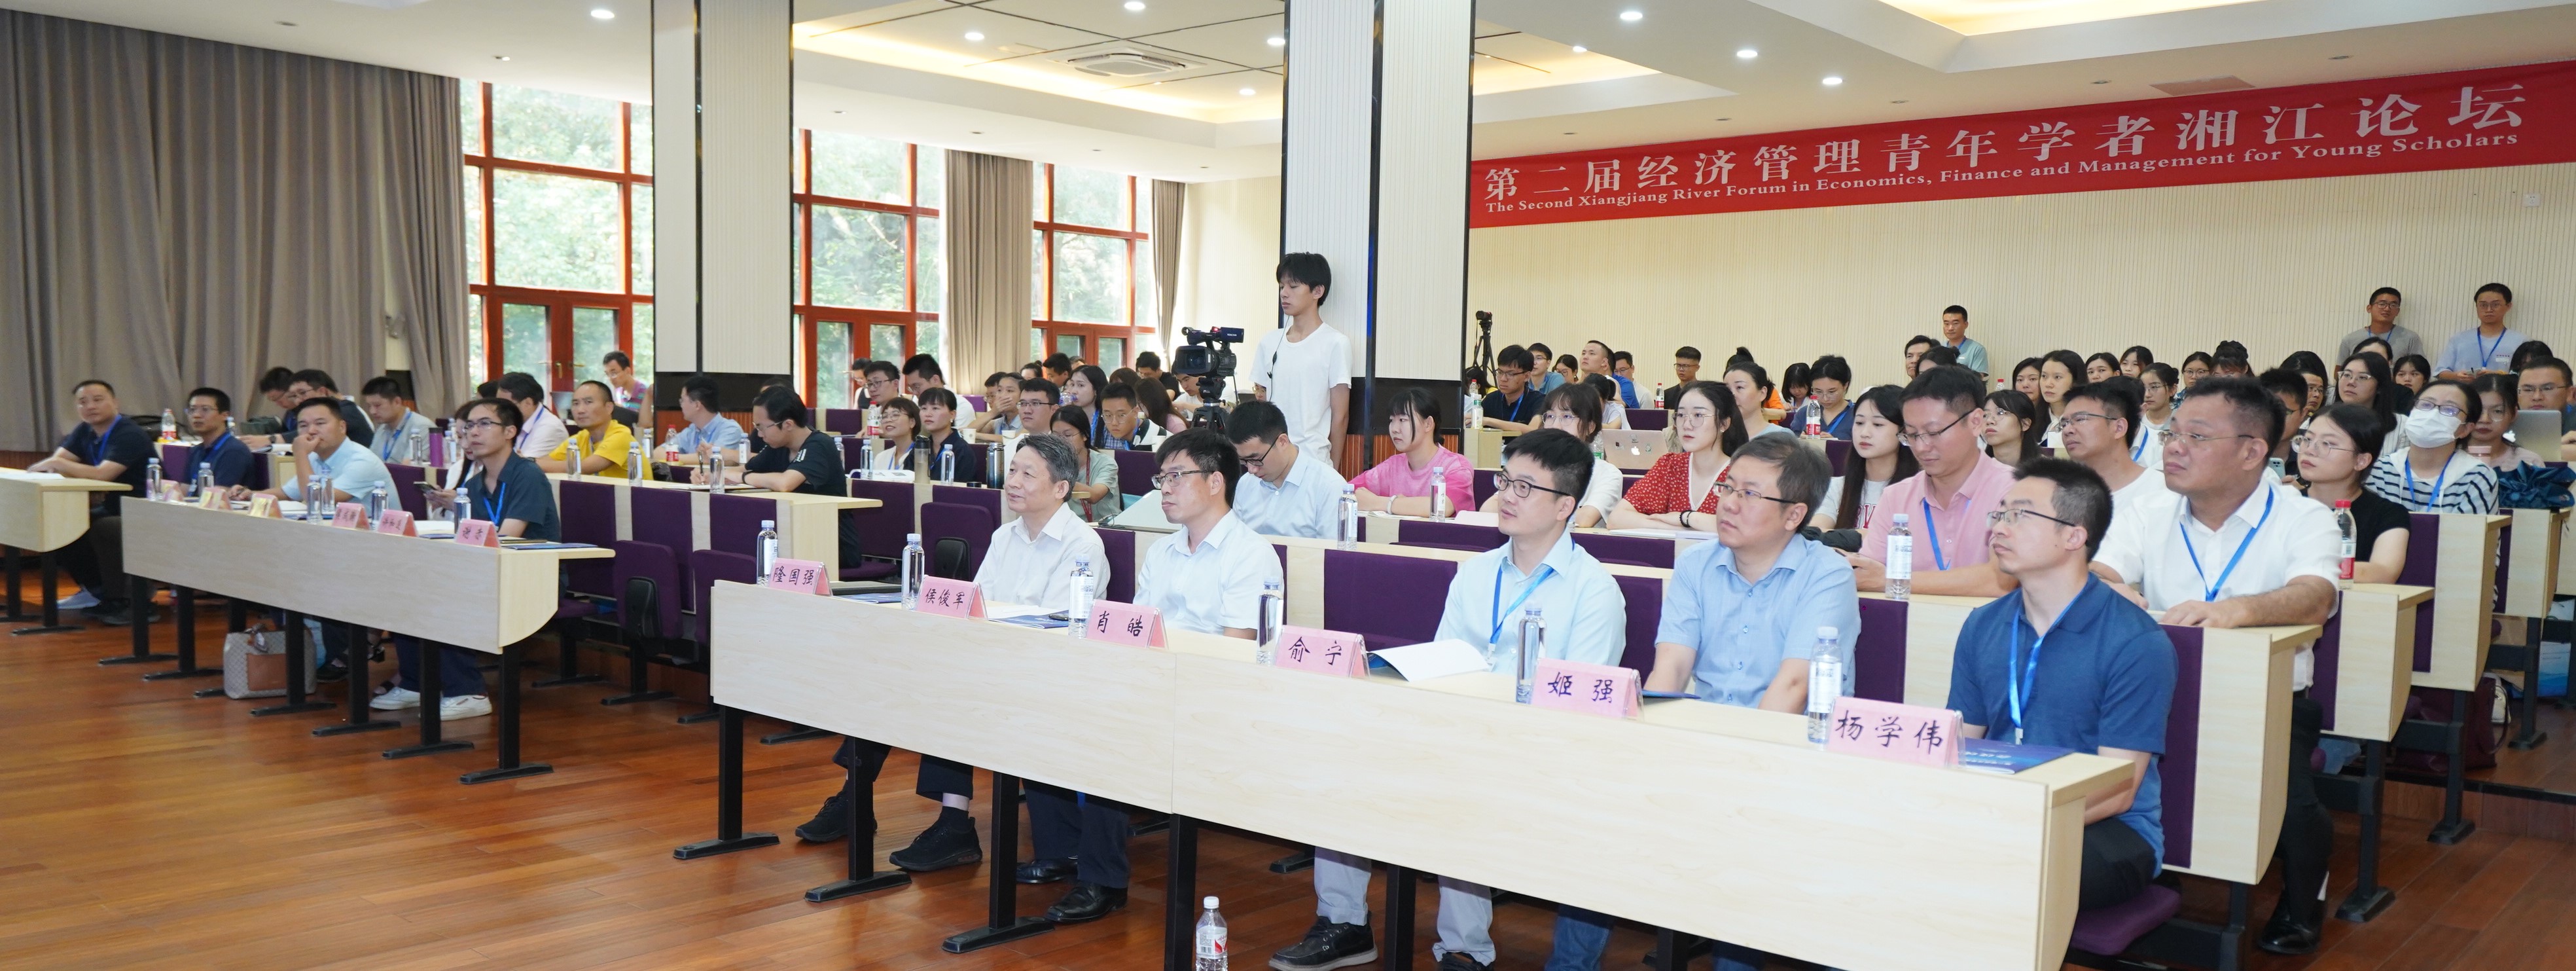 第二届经济管理青年学者湘江论坛顺利举办